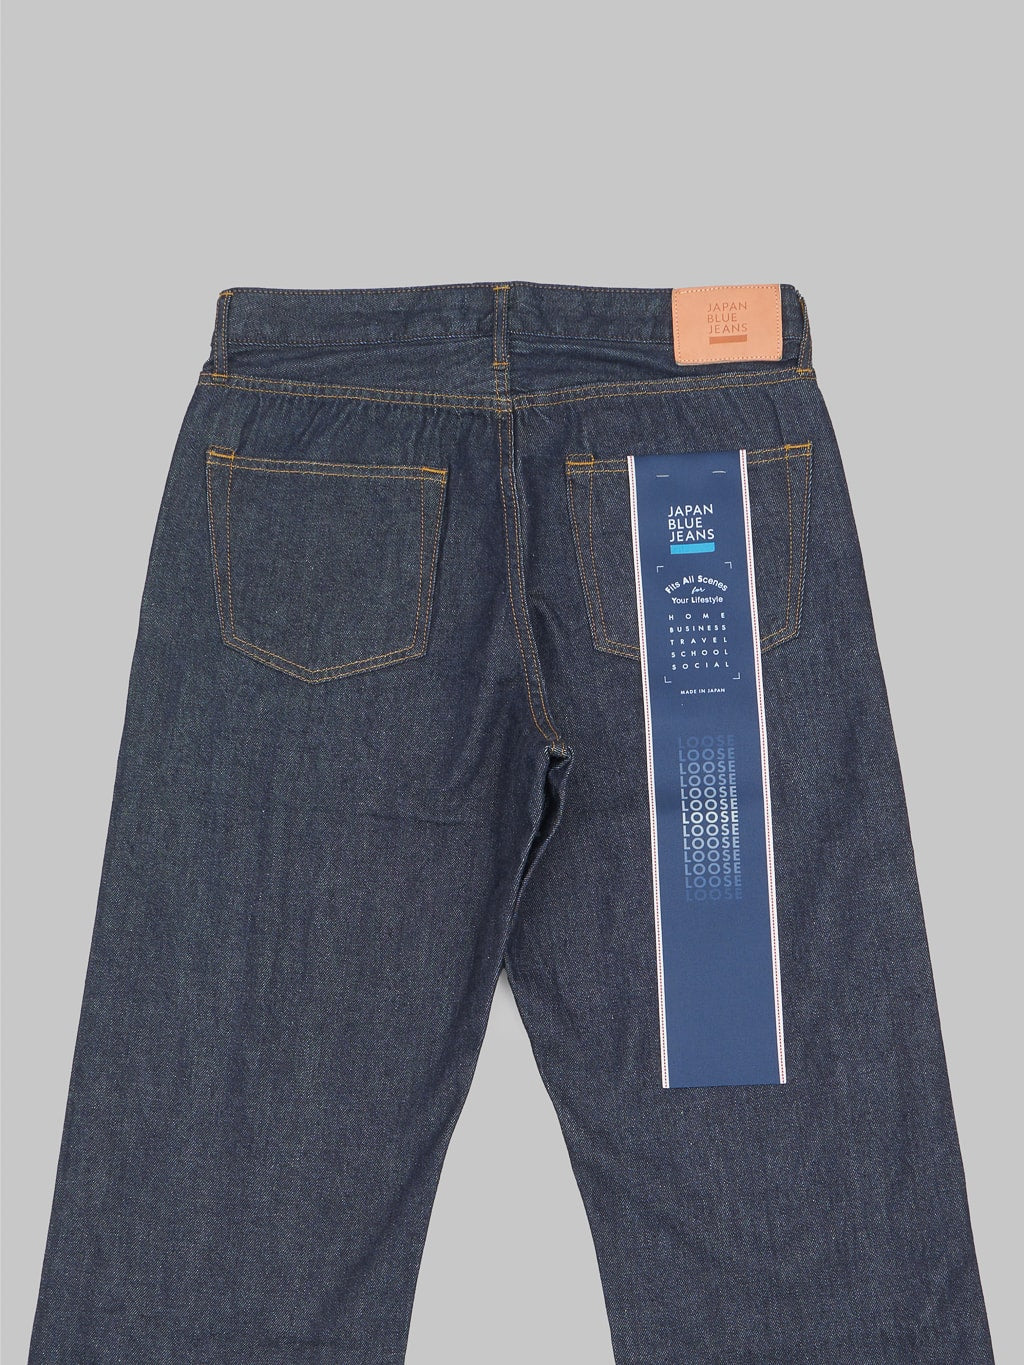 Japan Blue J508 lightweight selvedge denim loose Jeans back pockets